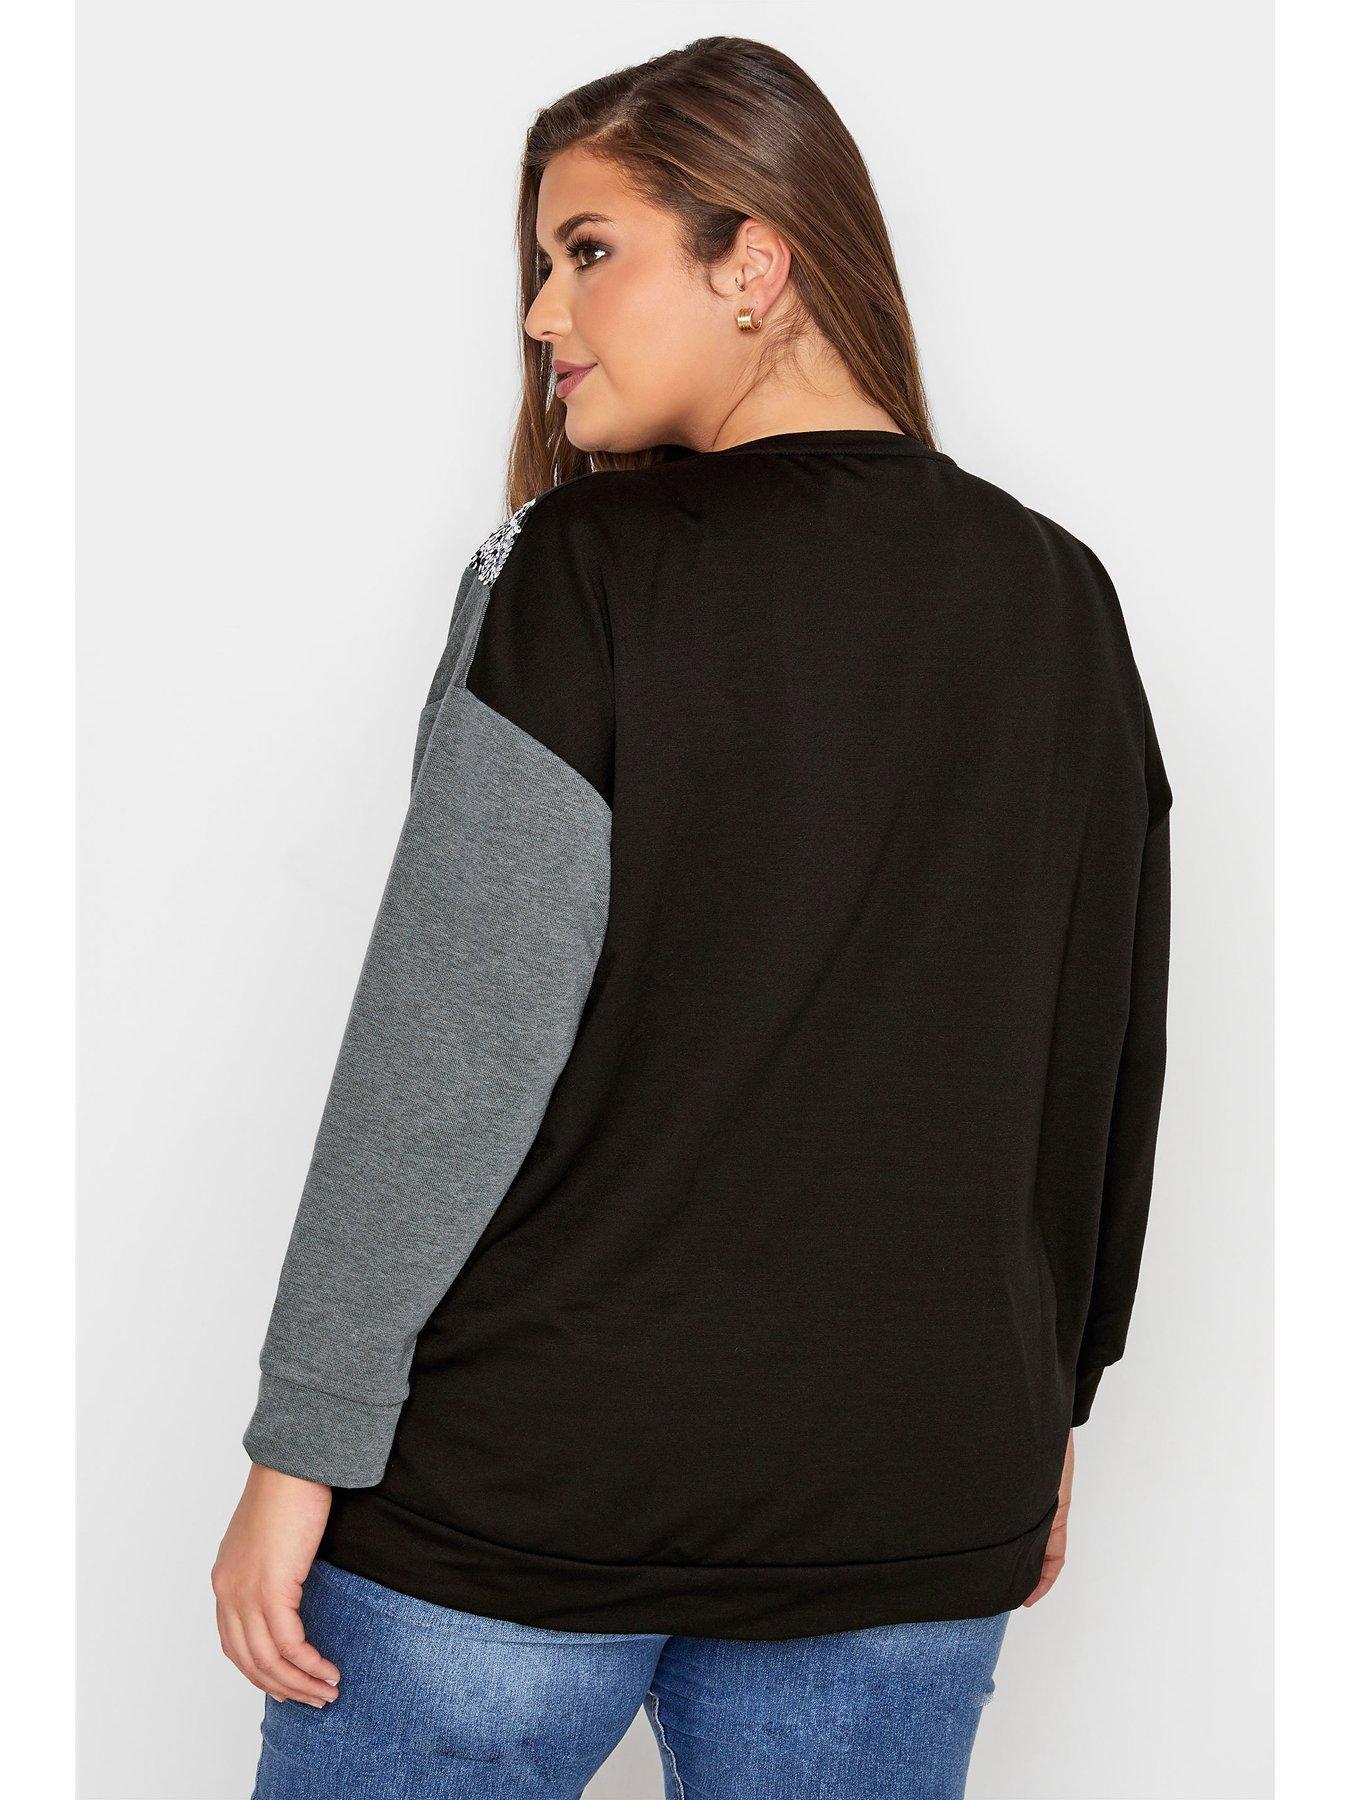  Half & Half Sequin Sweatshirt